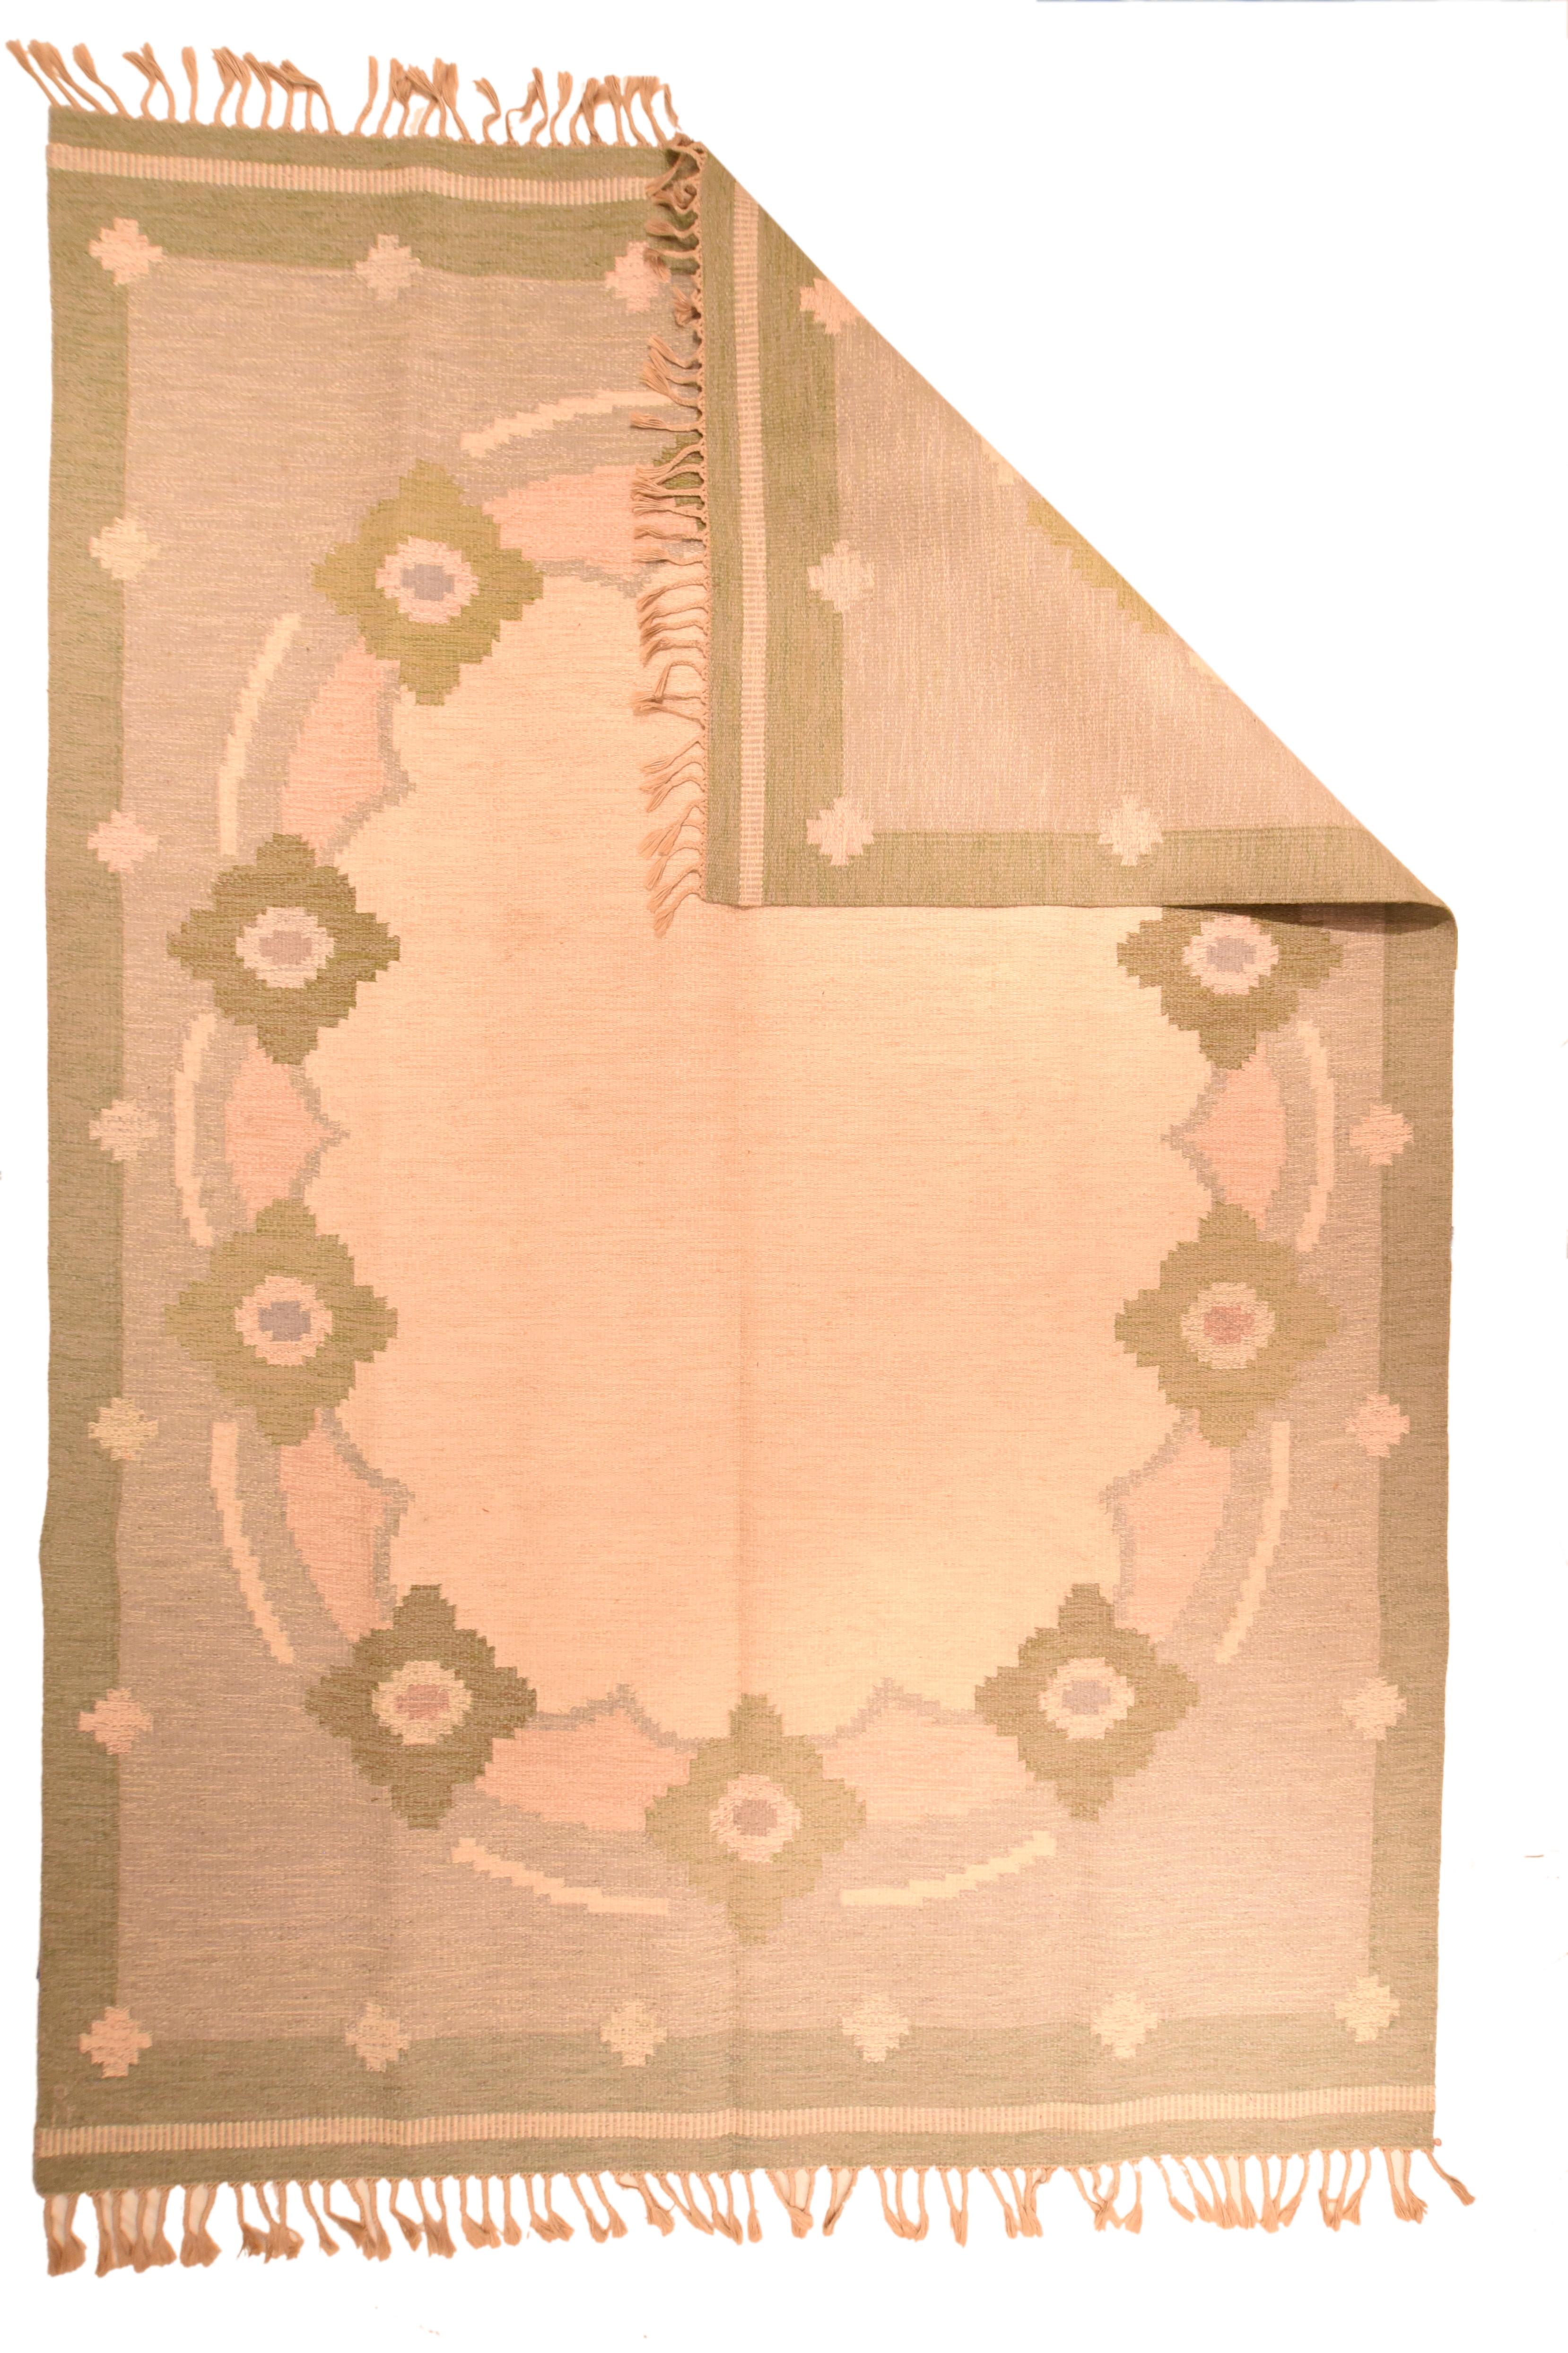 Dans un style Art déco européen simplifié, un champ de paille ovale ouvert est ancré à la bordure par dix rosettes festonnées de couleur rouille et ocre. Bordure extérieure en rouille unie. Armure de tapisserie à chaîne partagée moyennement